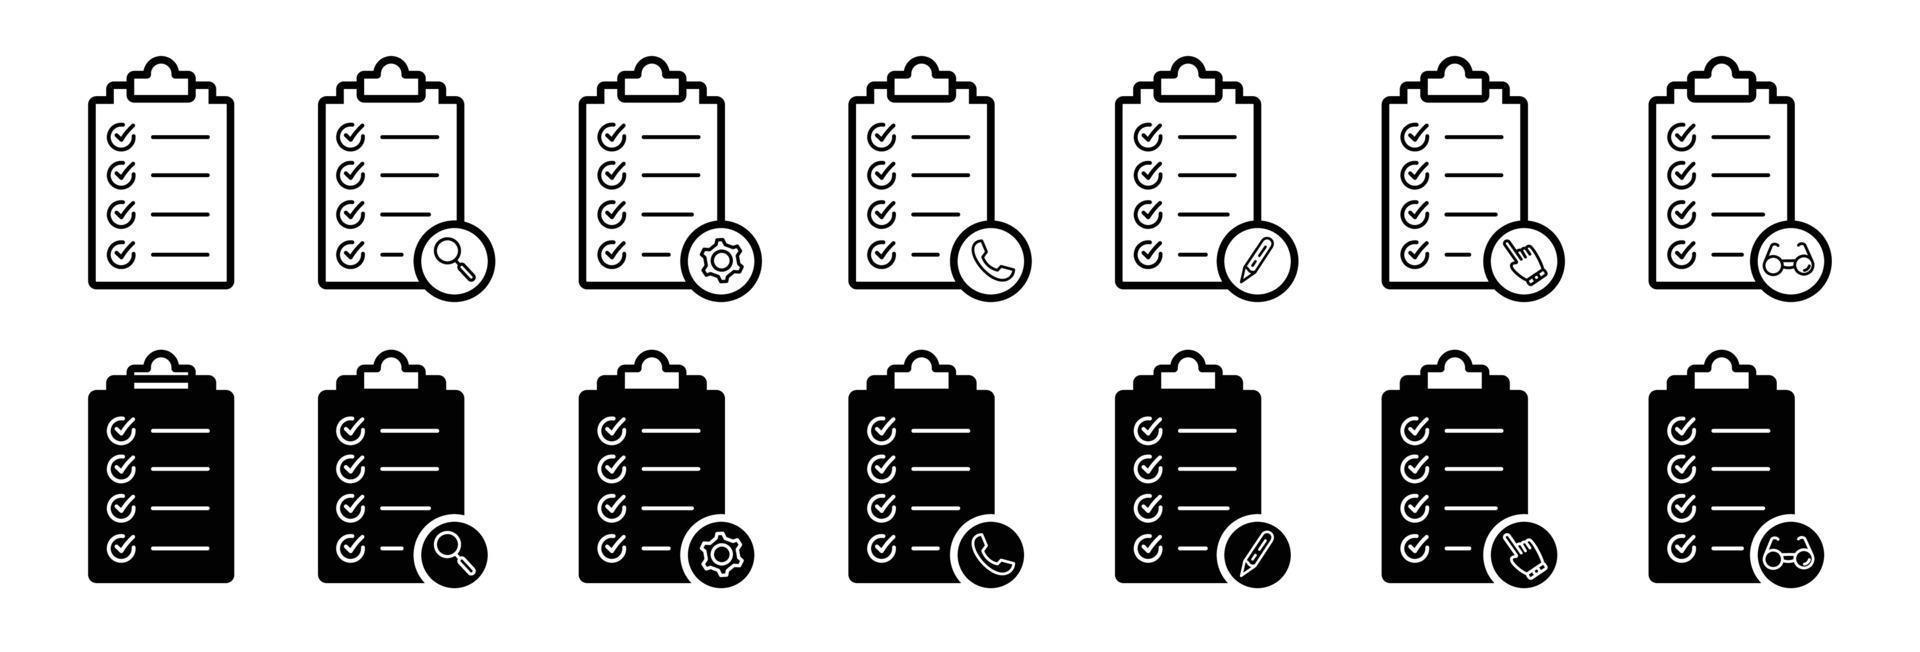 Checkliste-Zwischenablage-Icon-Set. Qualitätszeichen Checkliste flache Linie Symbolform vektor